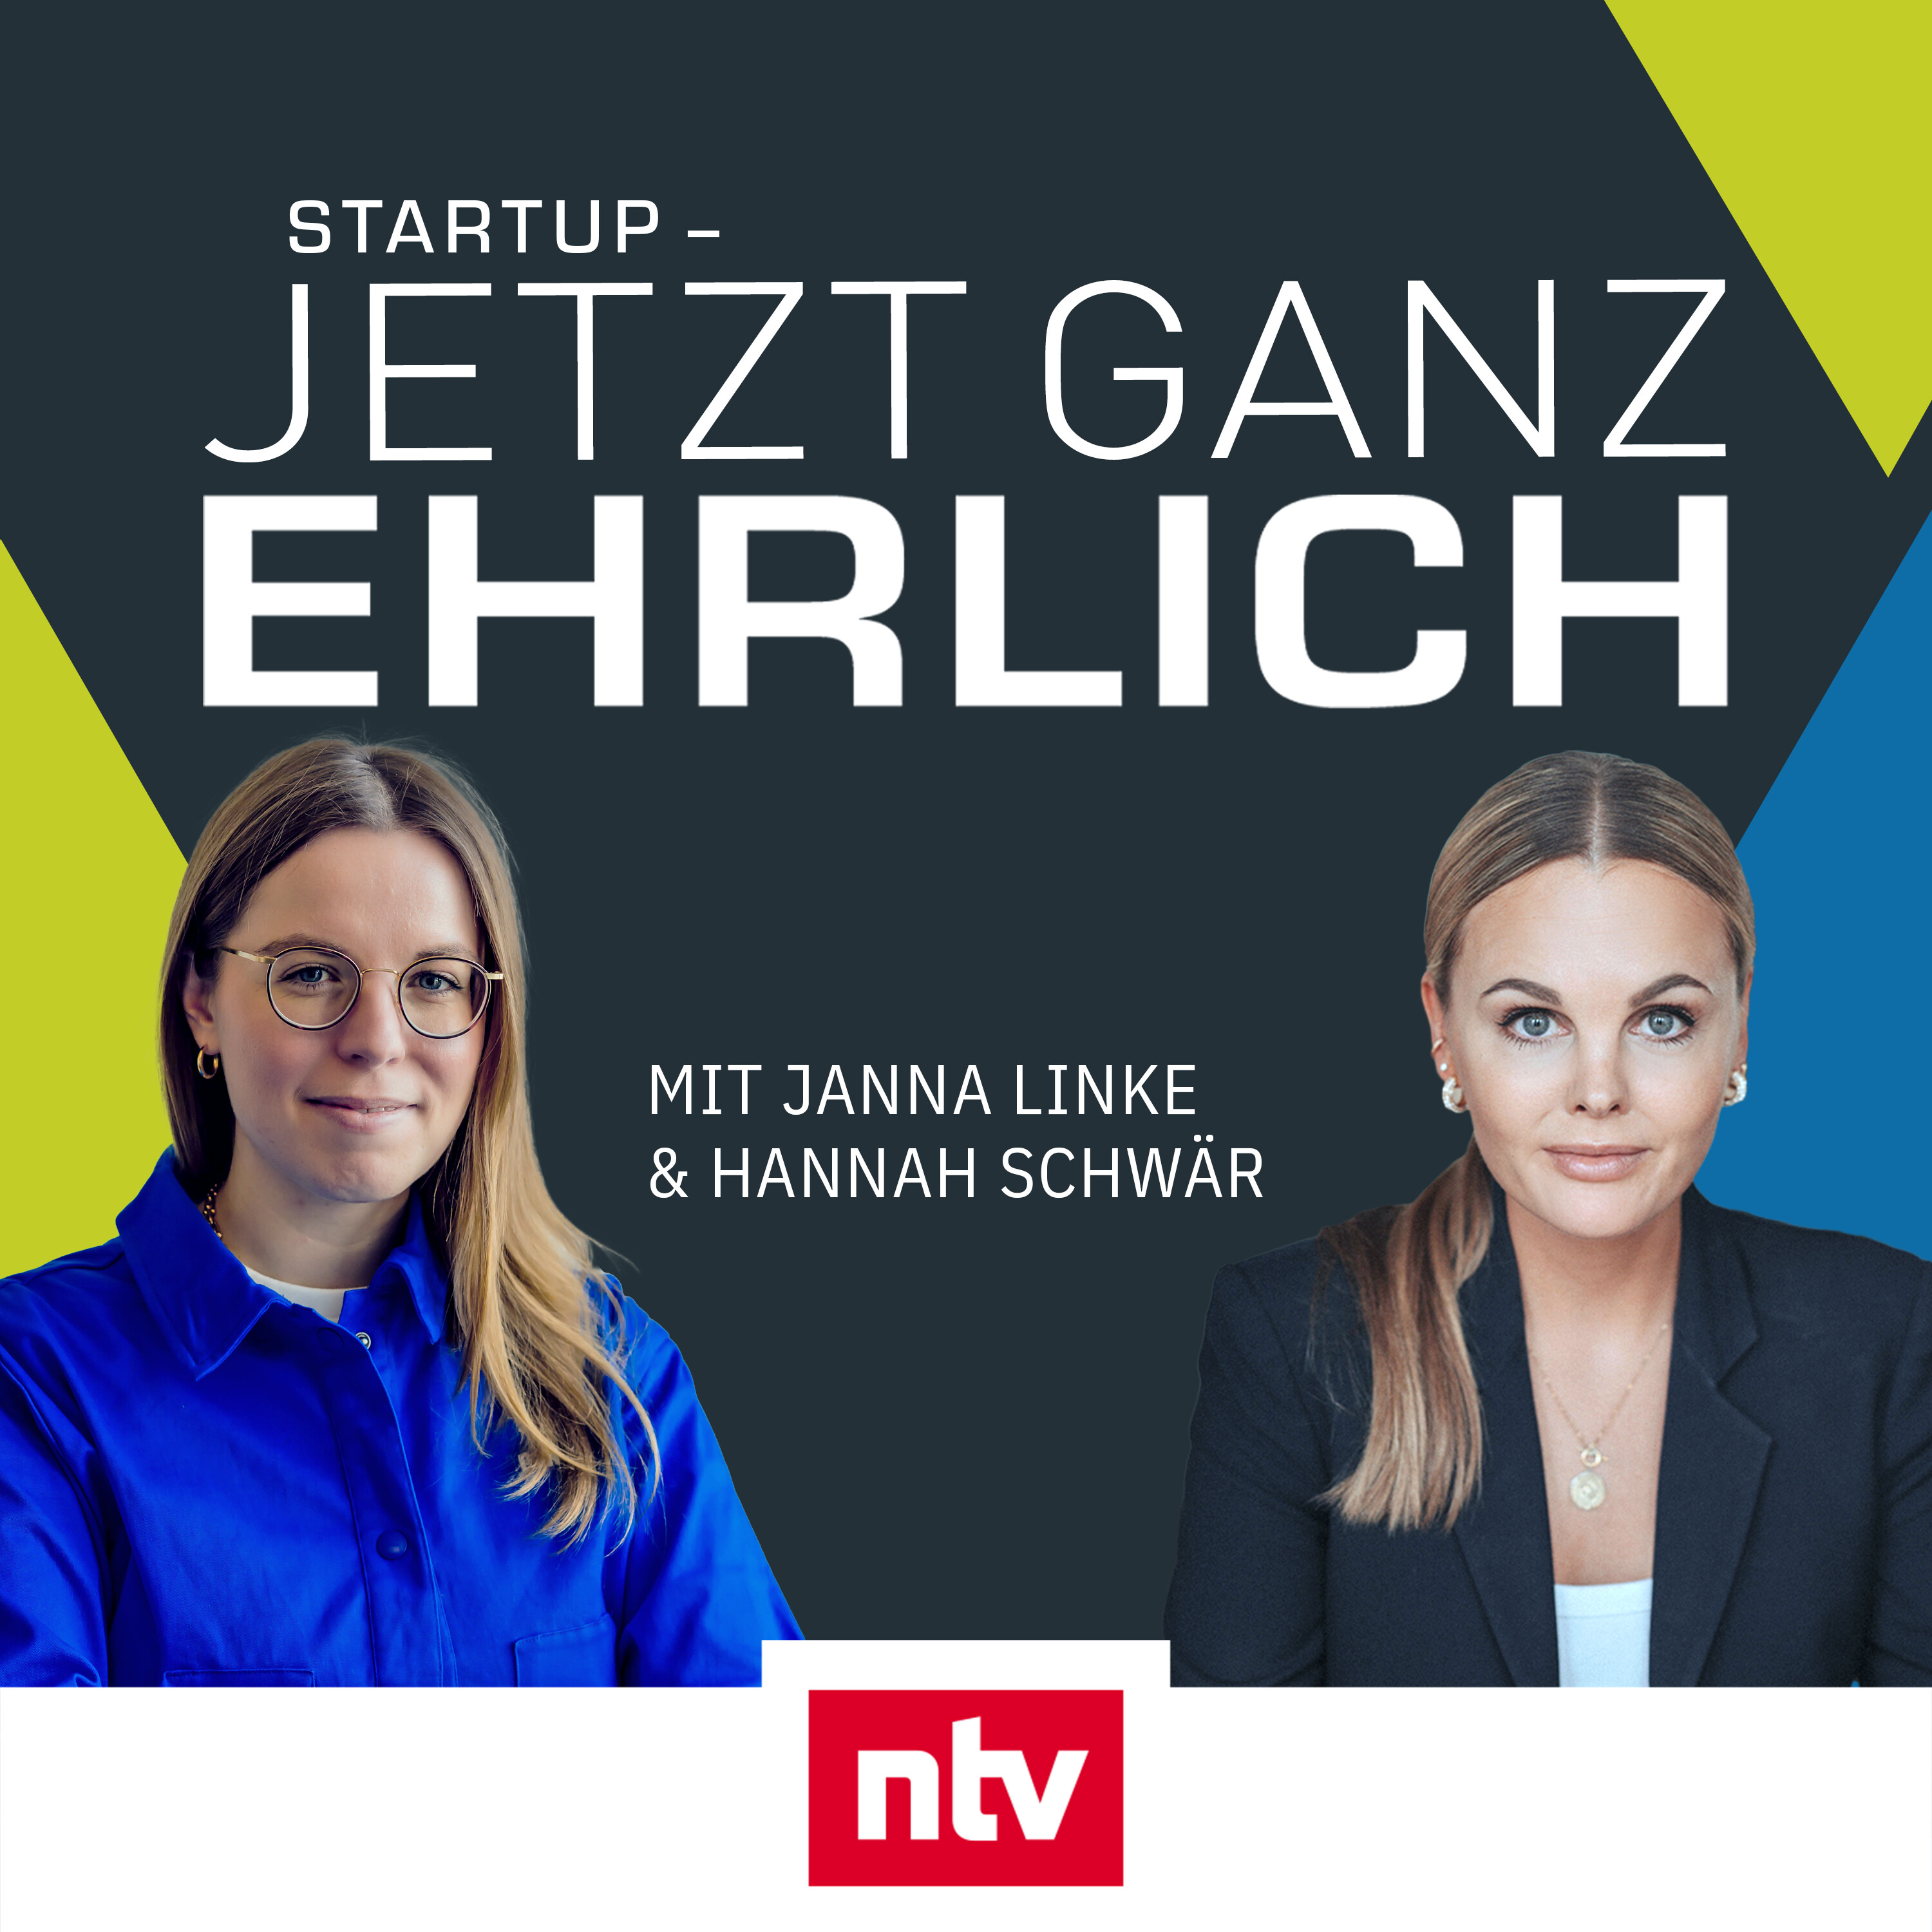 ”In der Startup-Welt schlägt die Stunde der Nerds” - mit Hannah Schwär, Capital